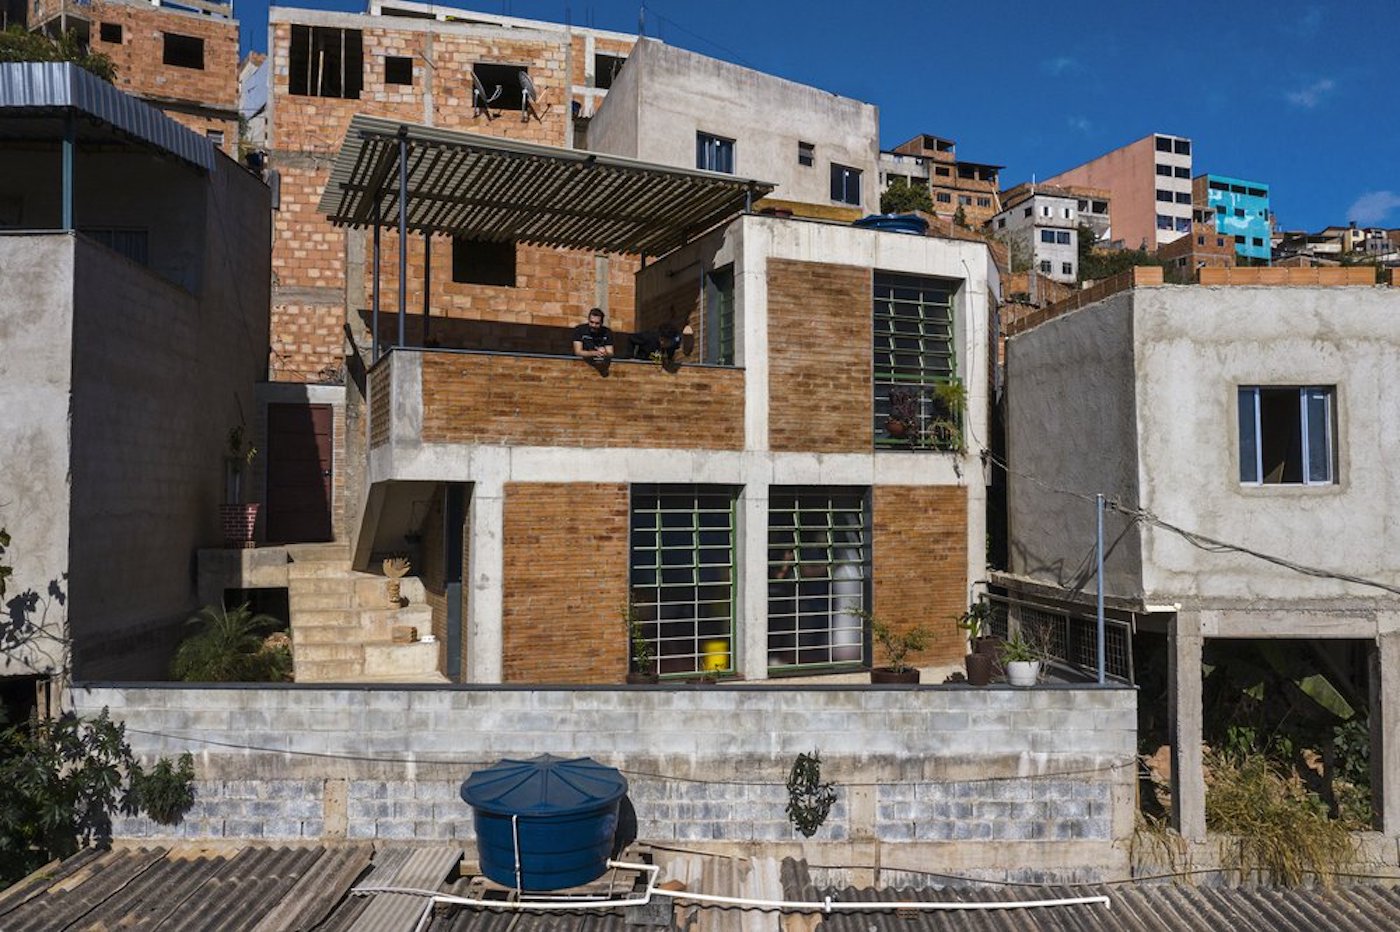 Casa em favela de Belo Horizonte concorre a prêmio internacional